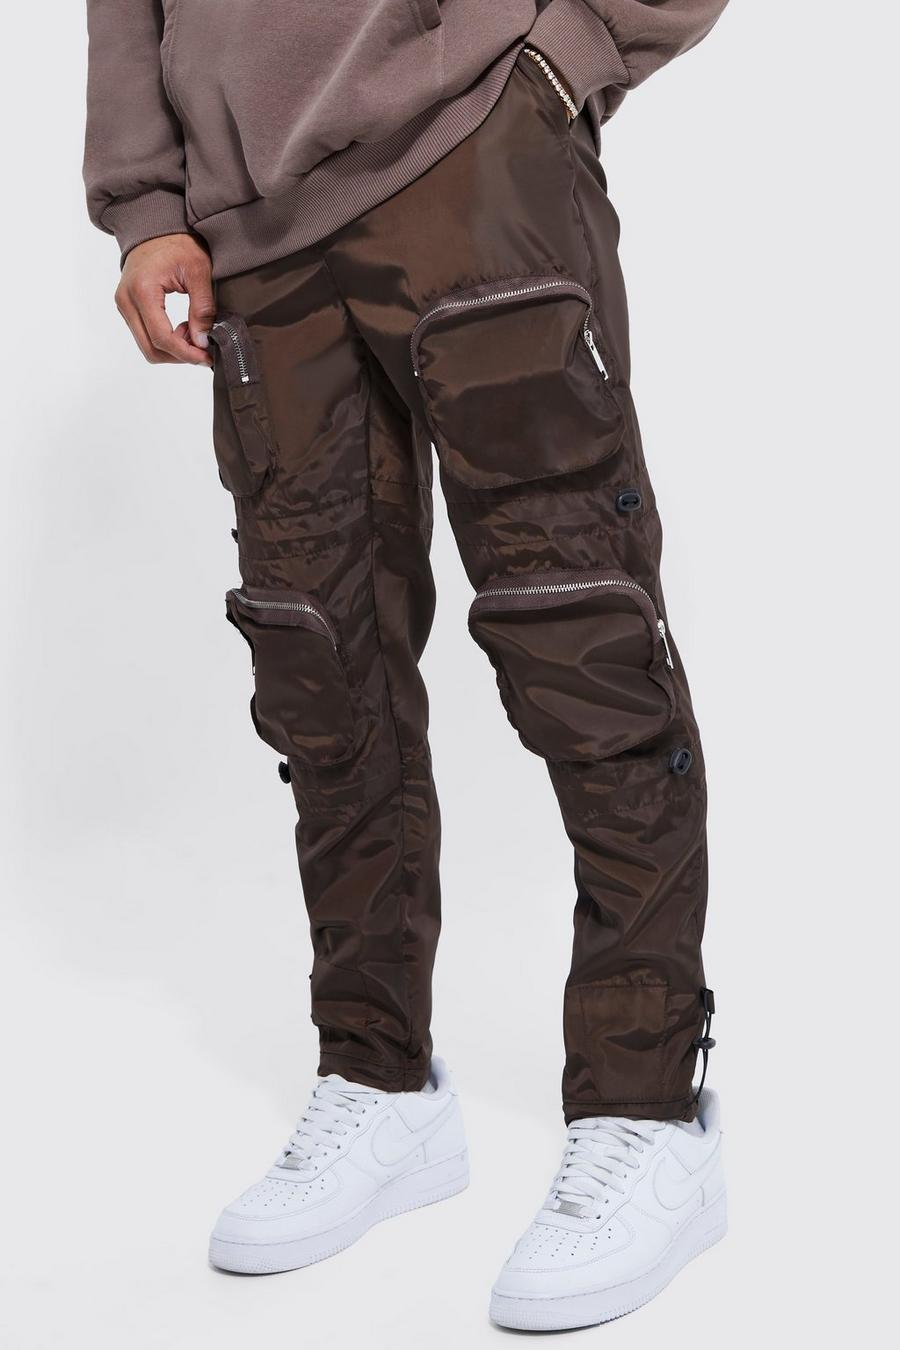 Pantalón estrecho con hebilla, multibolsillos cargo y cintura elástica, Chocolate